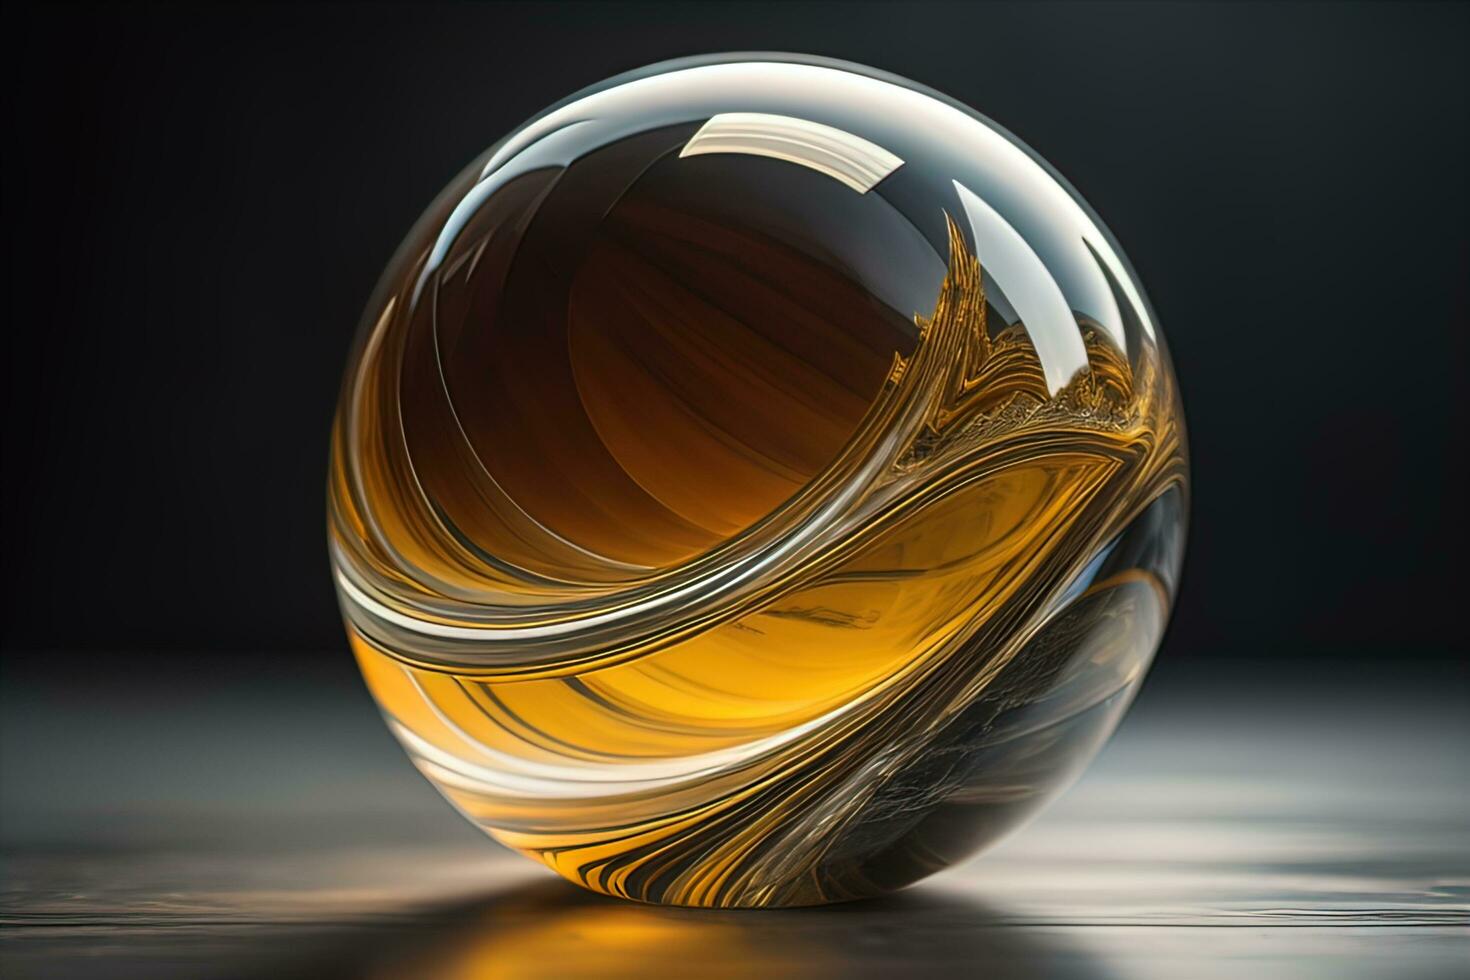 transparent Kristall Ball auf ein hölzern Tisch. ai generativ foto